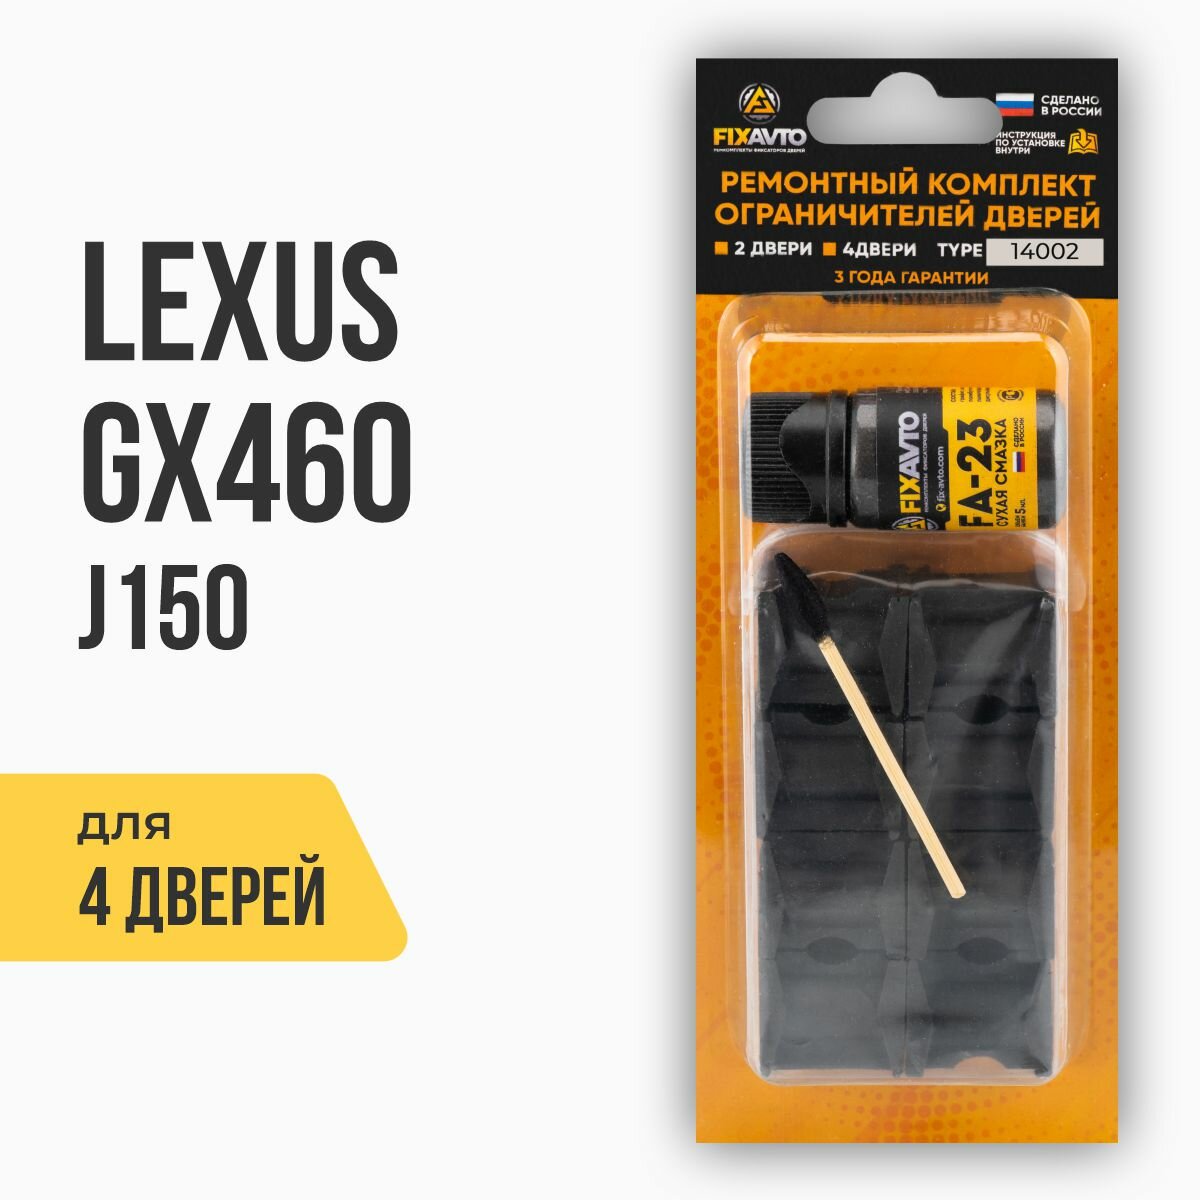 Ремкомплект ограничителей на 4 двери Lexus GX460 J150, Кузов: 15#, Г. в: 2009-2017 TYPE 14002 Тип 2